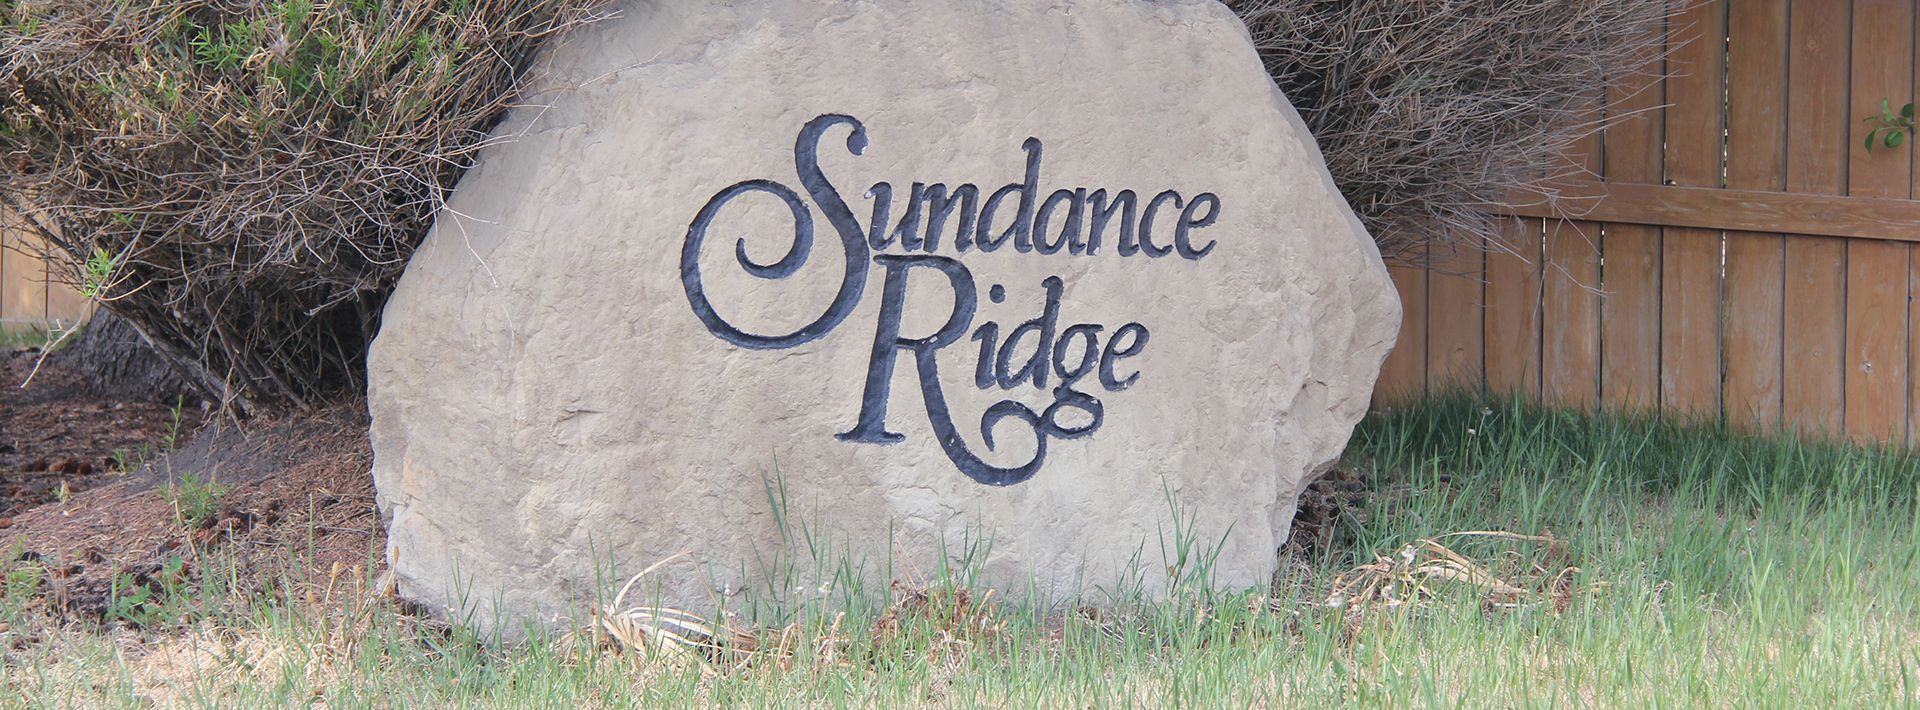 A large rock in the grass says Sundance ridge